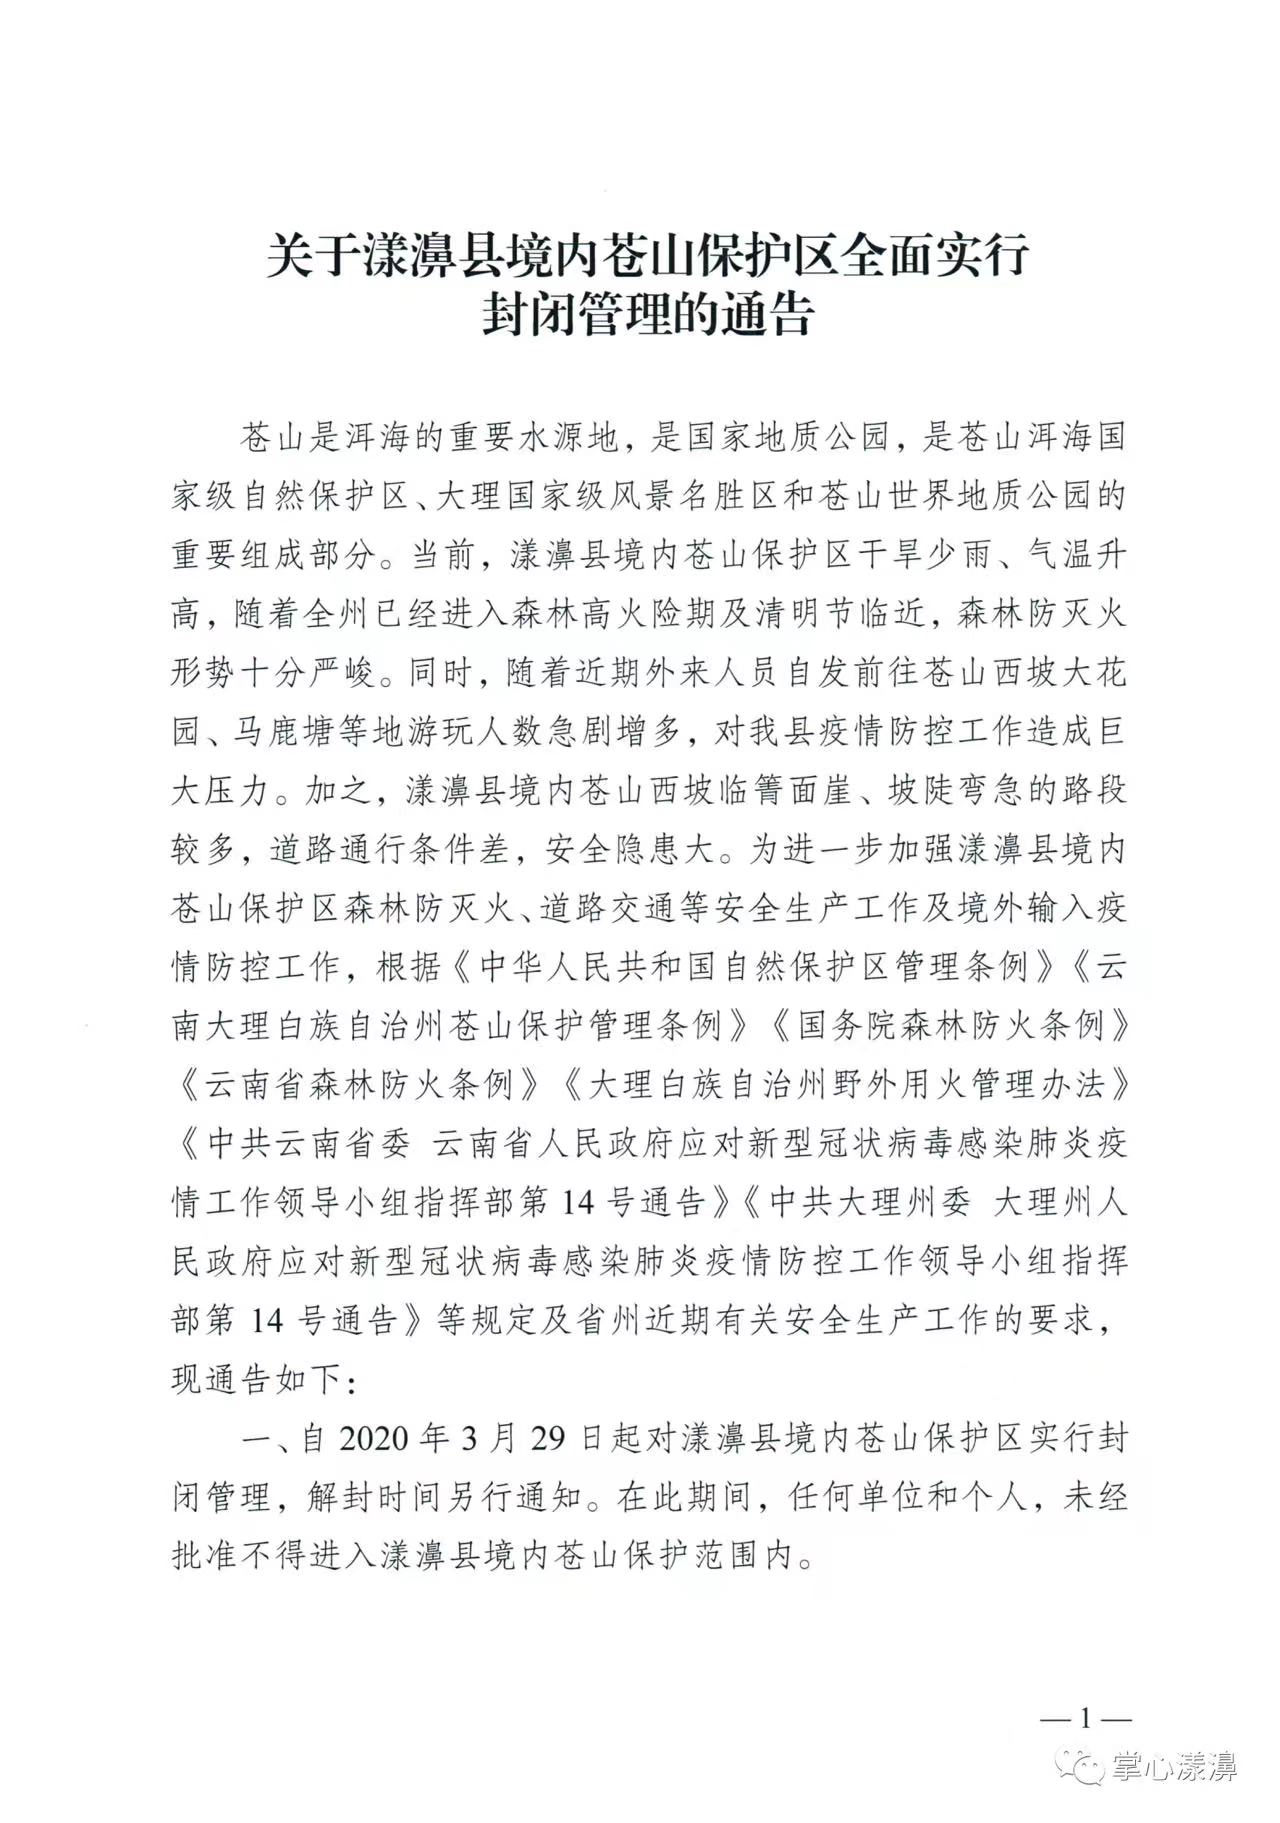 漾濞县境内苍山保护区曾发布的管理公告 来源“掌心漾濞”